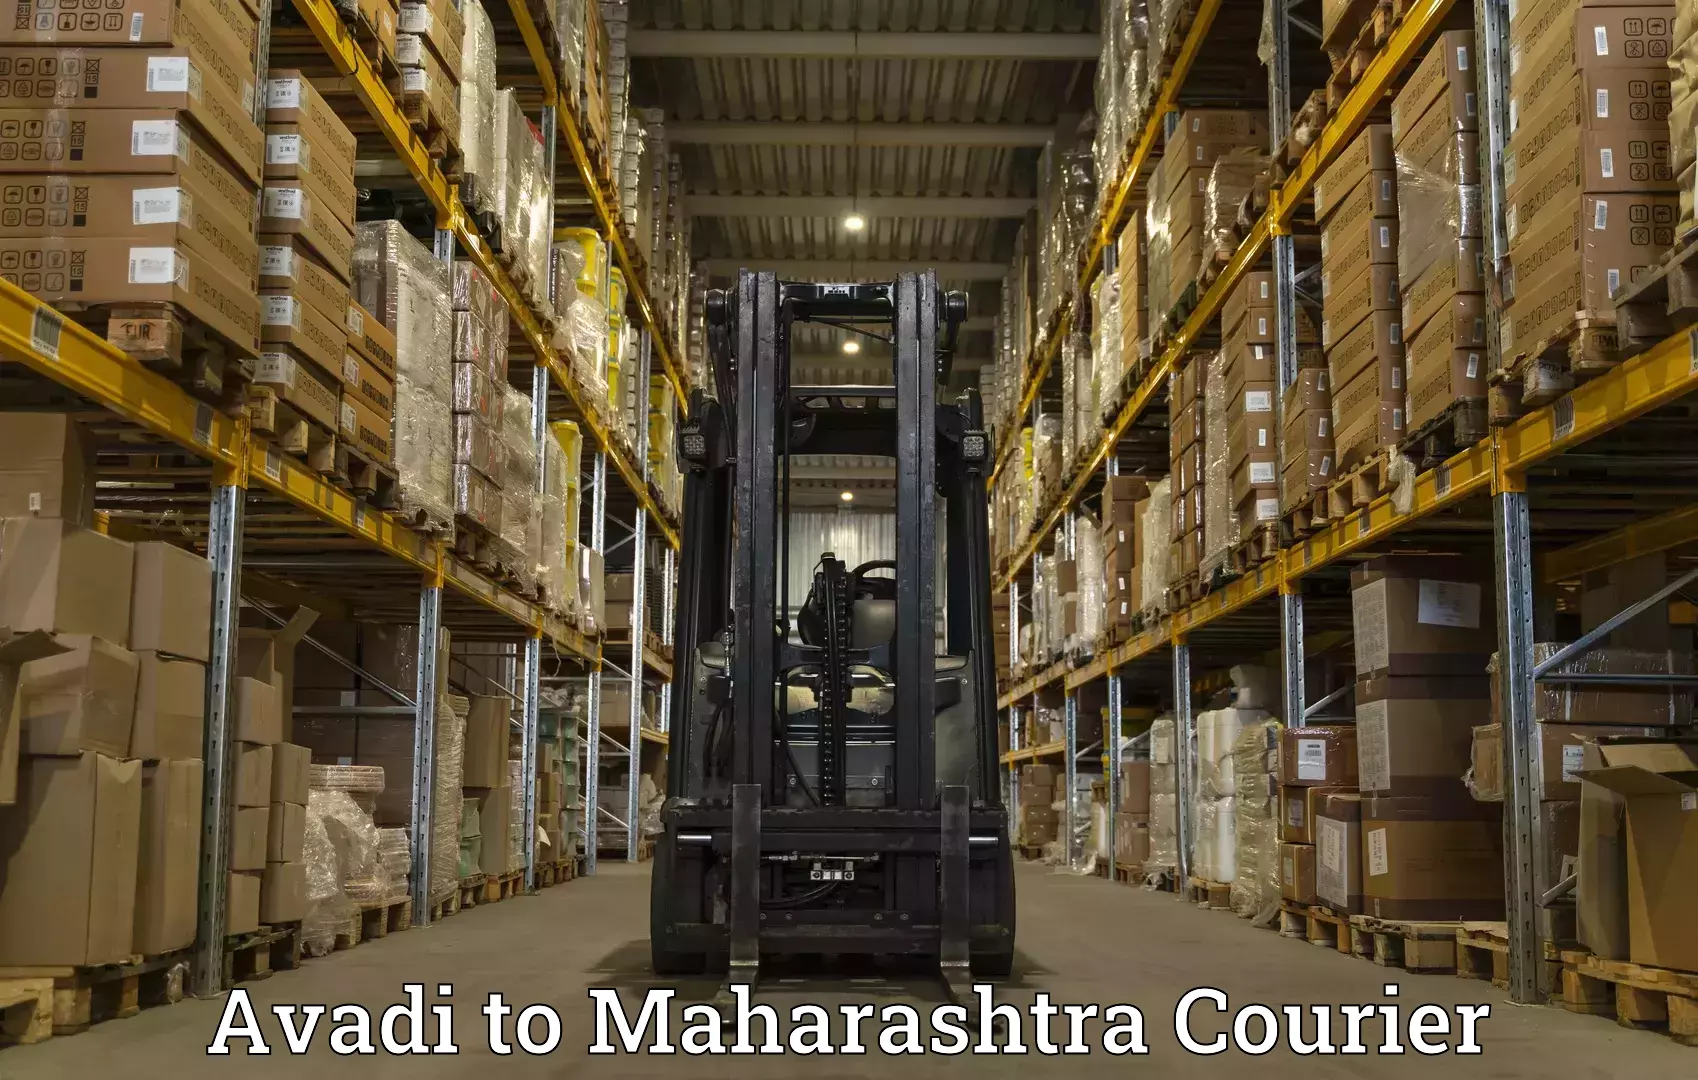 Subscription-based courier Avadi to Maharashtra